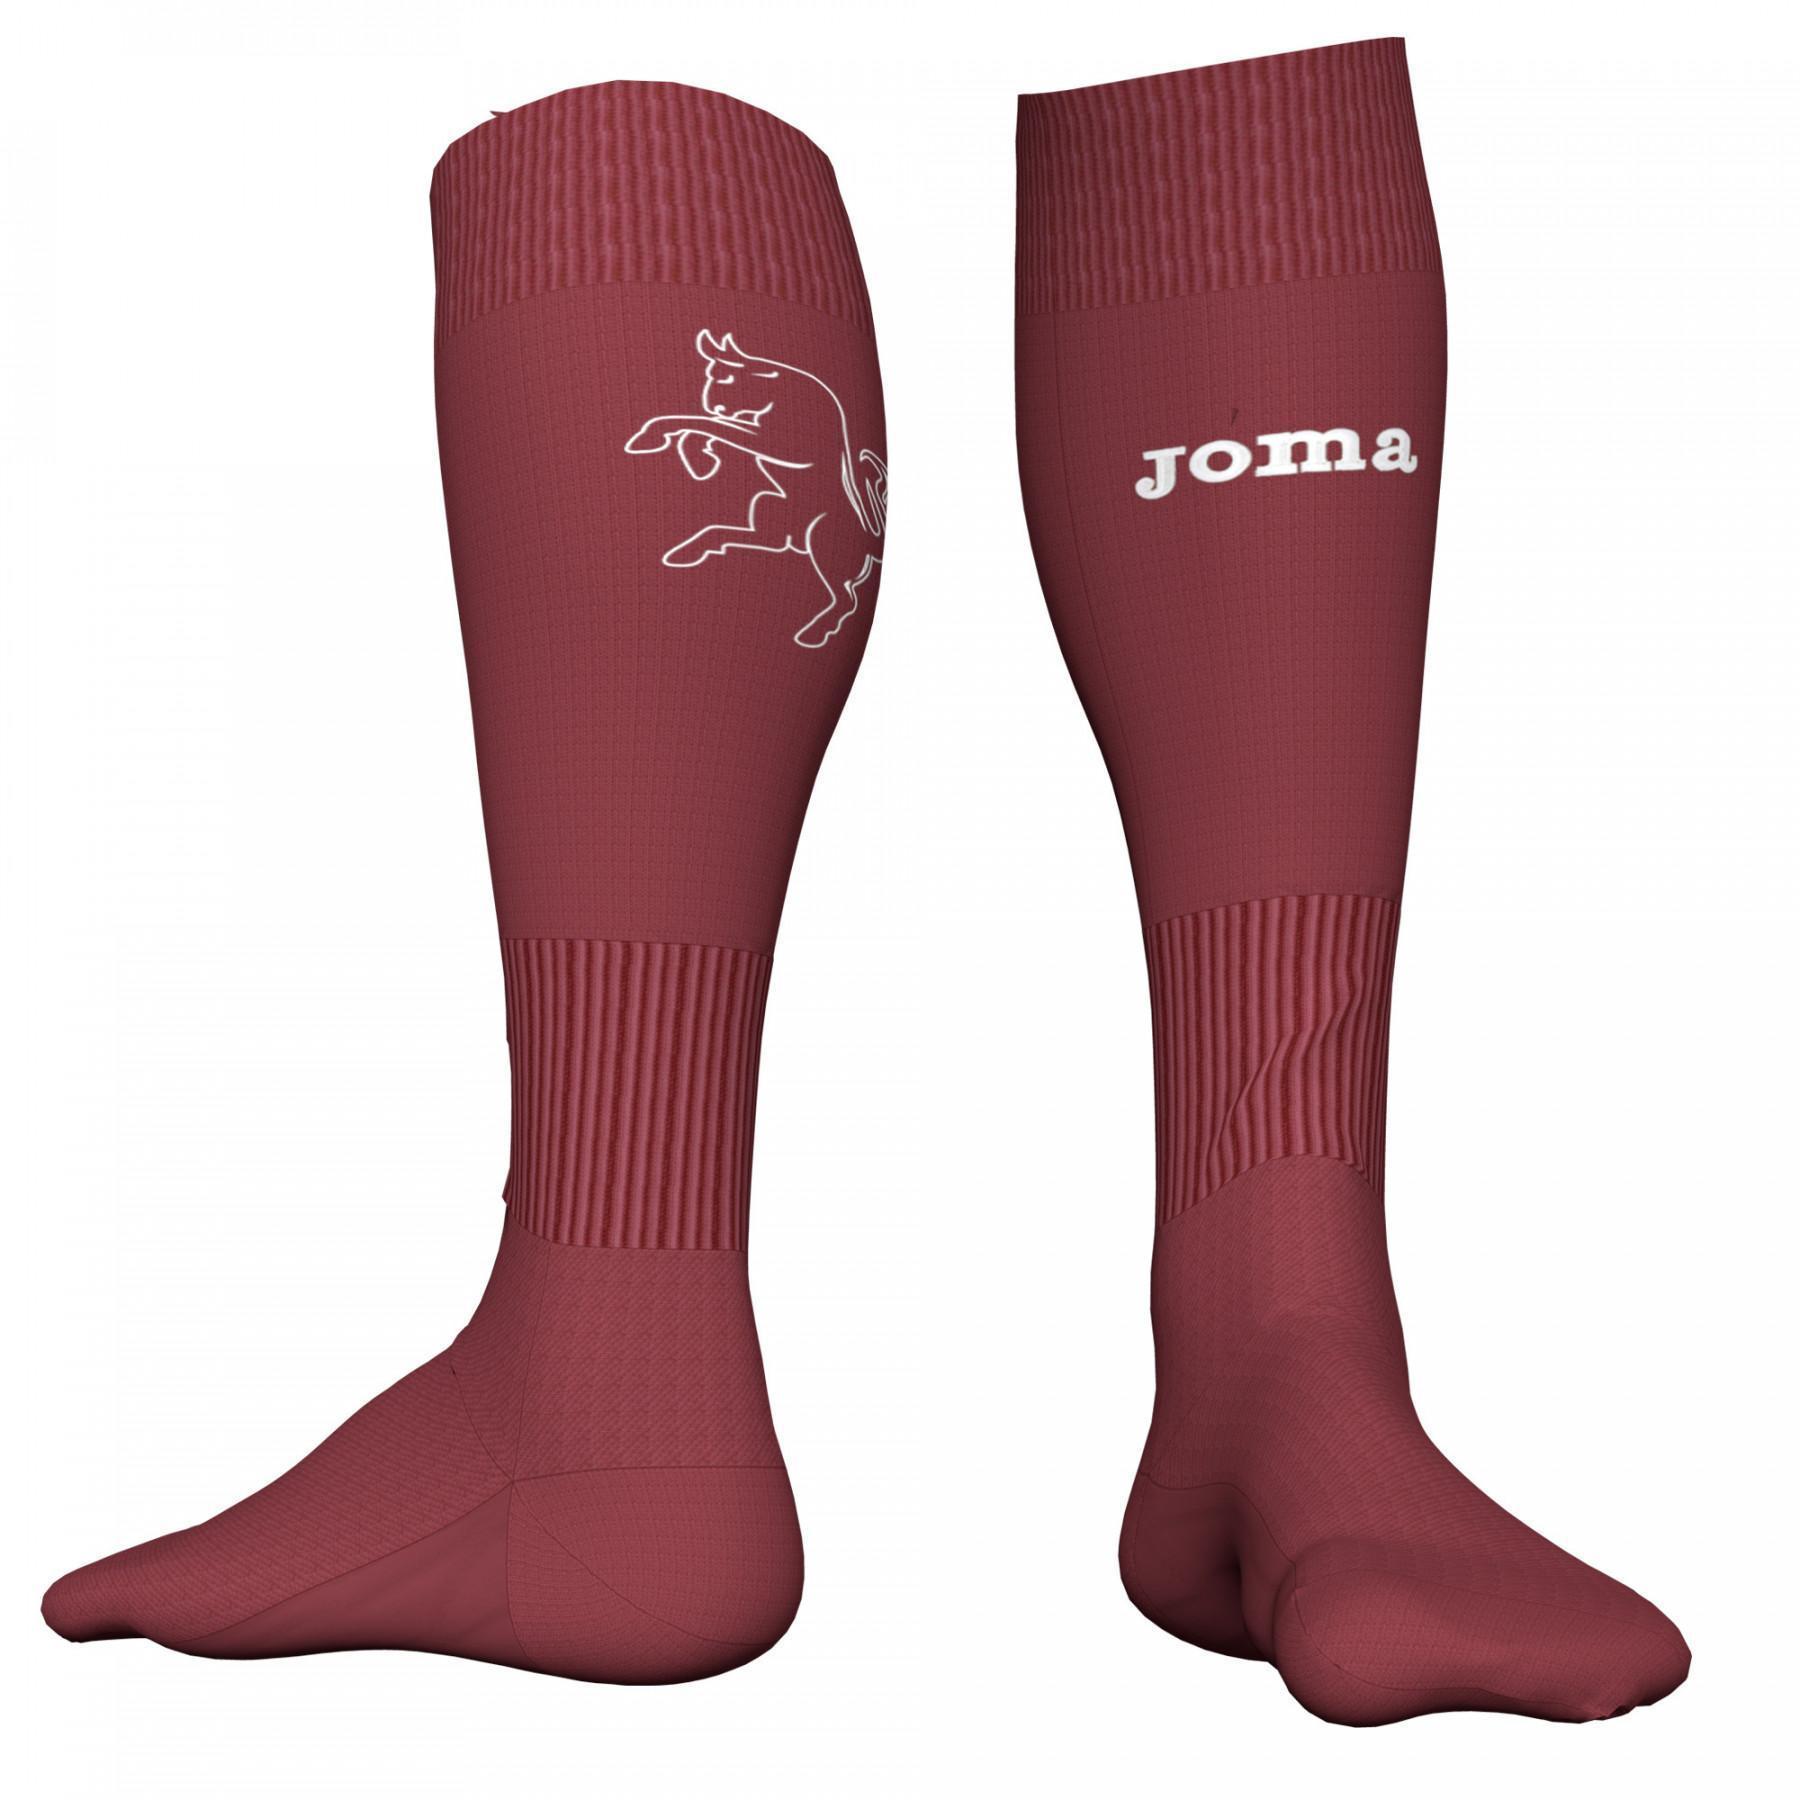 Home sokken Torino 2019/20